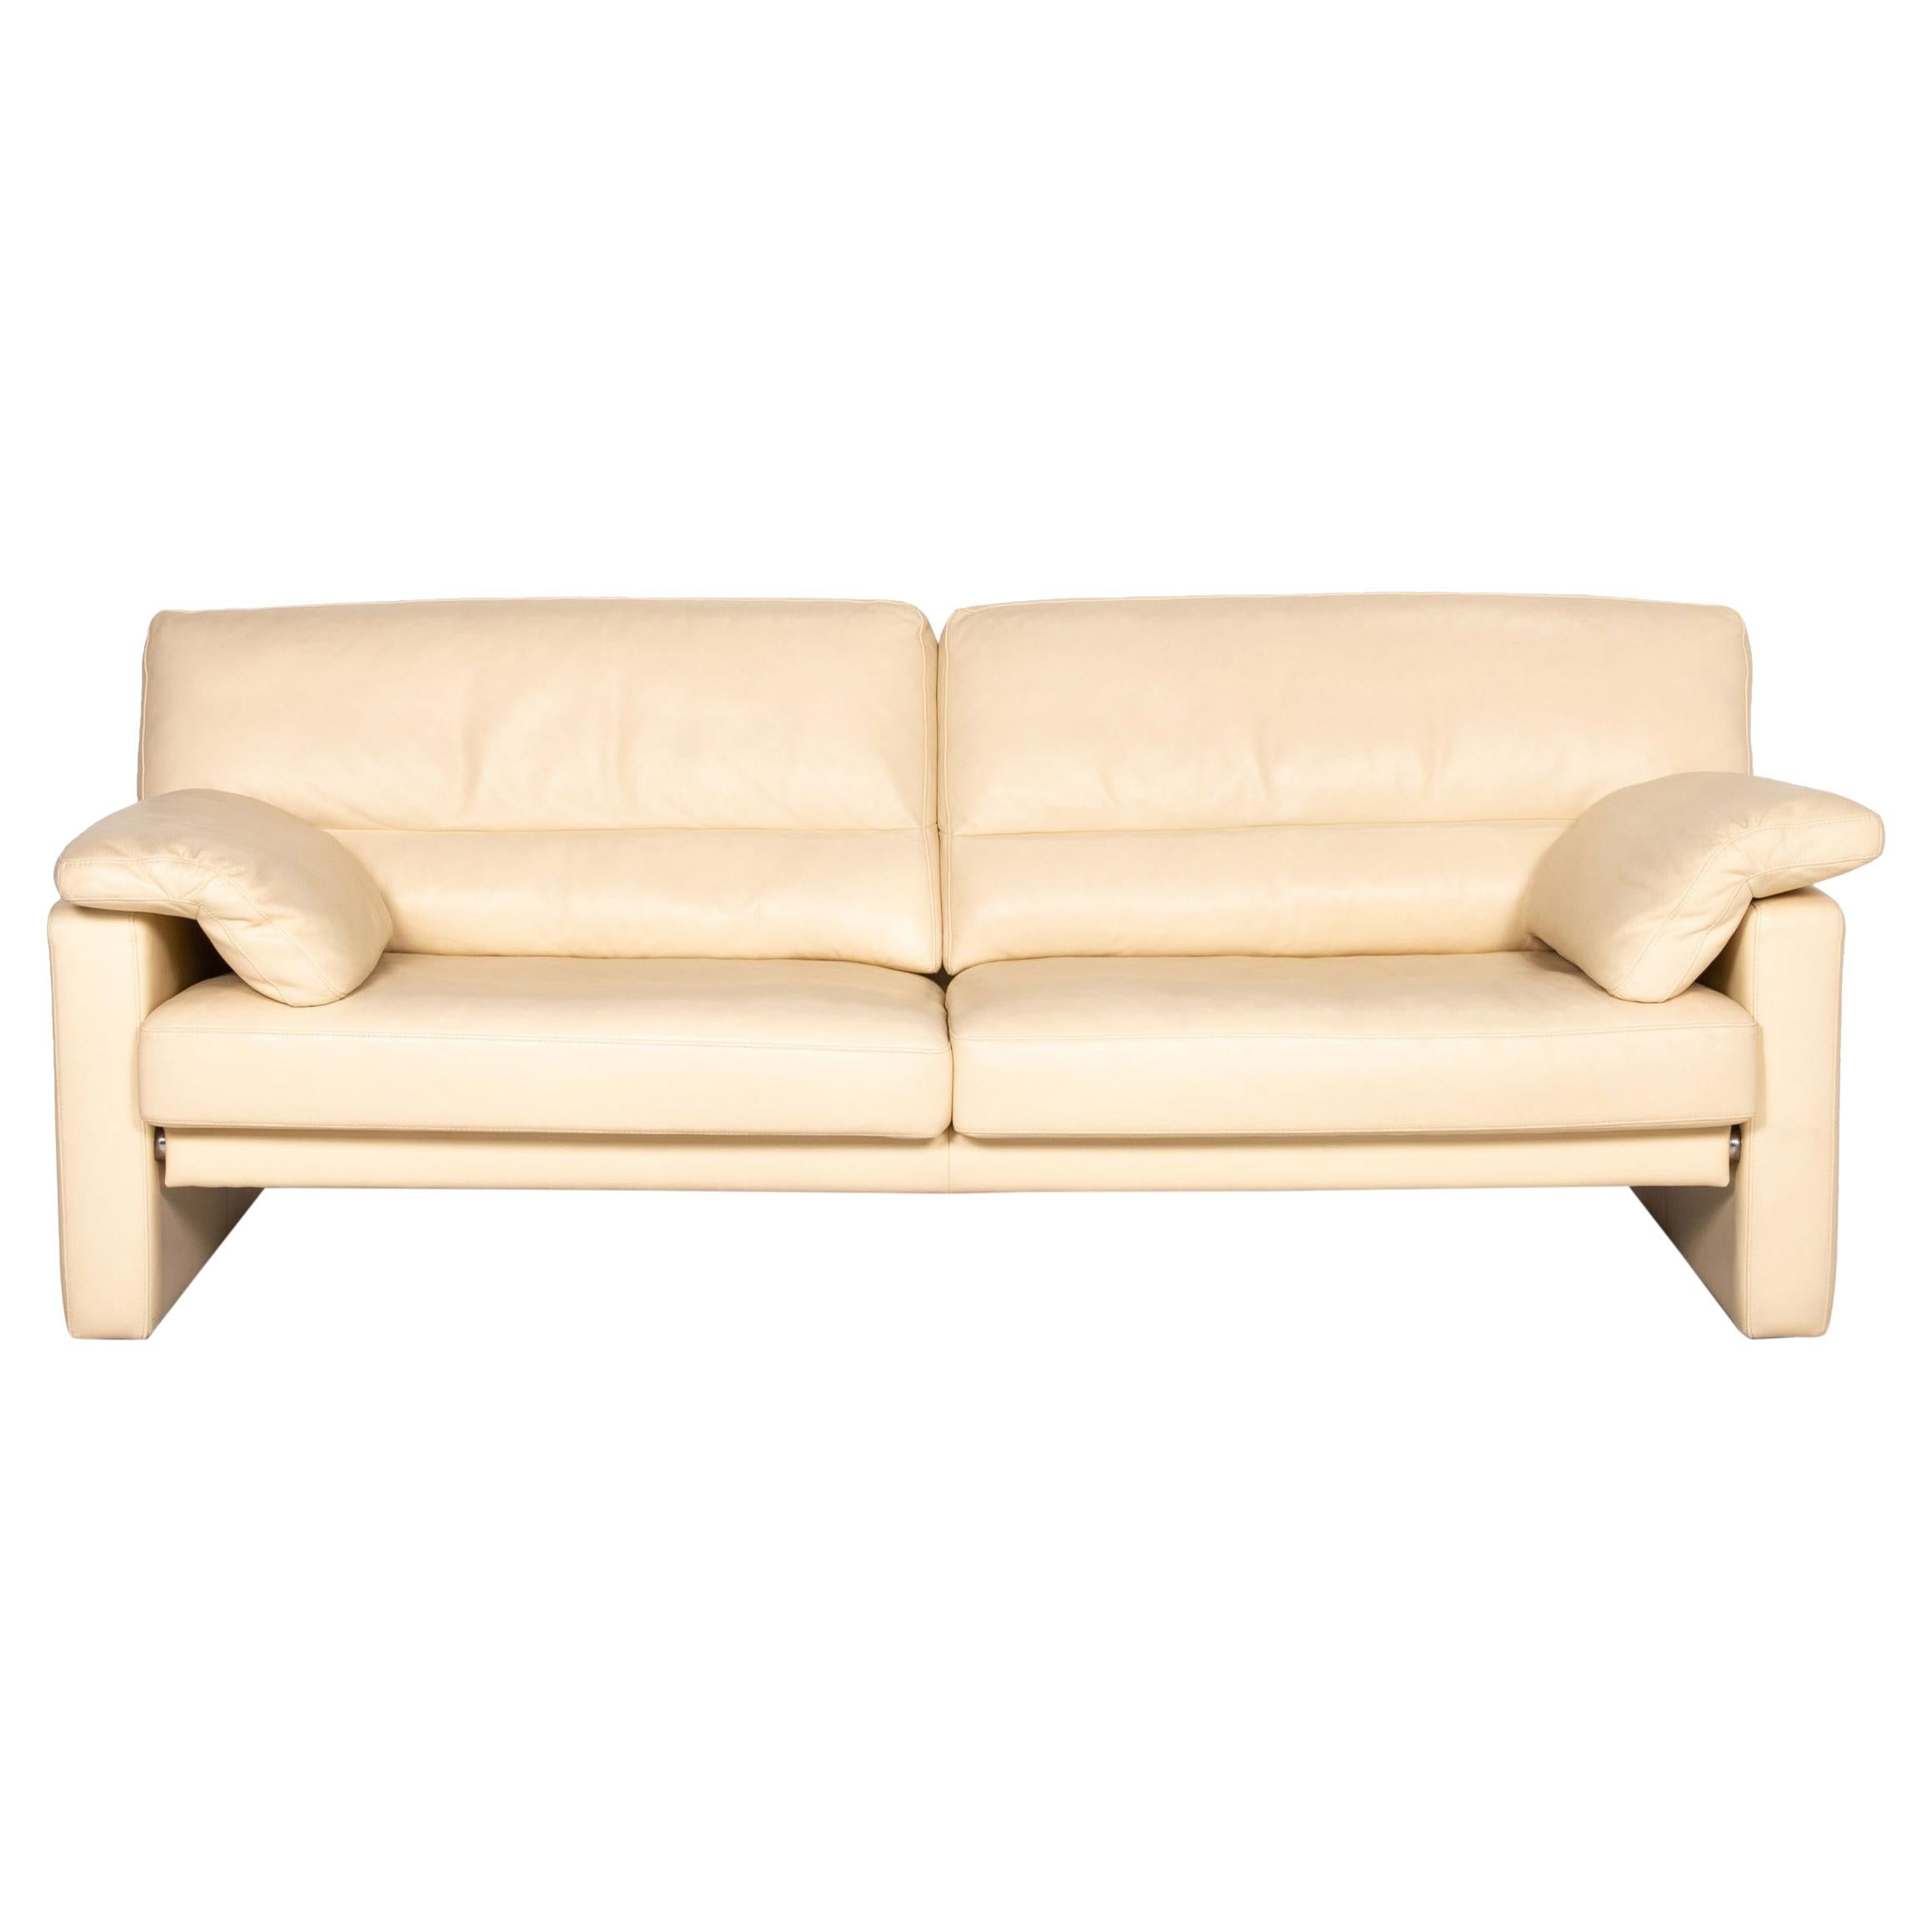 Bielefelder Werkstätten Leather Sofa Cream Three-Seater Couch For Sale